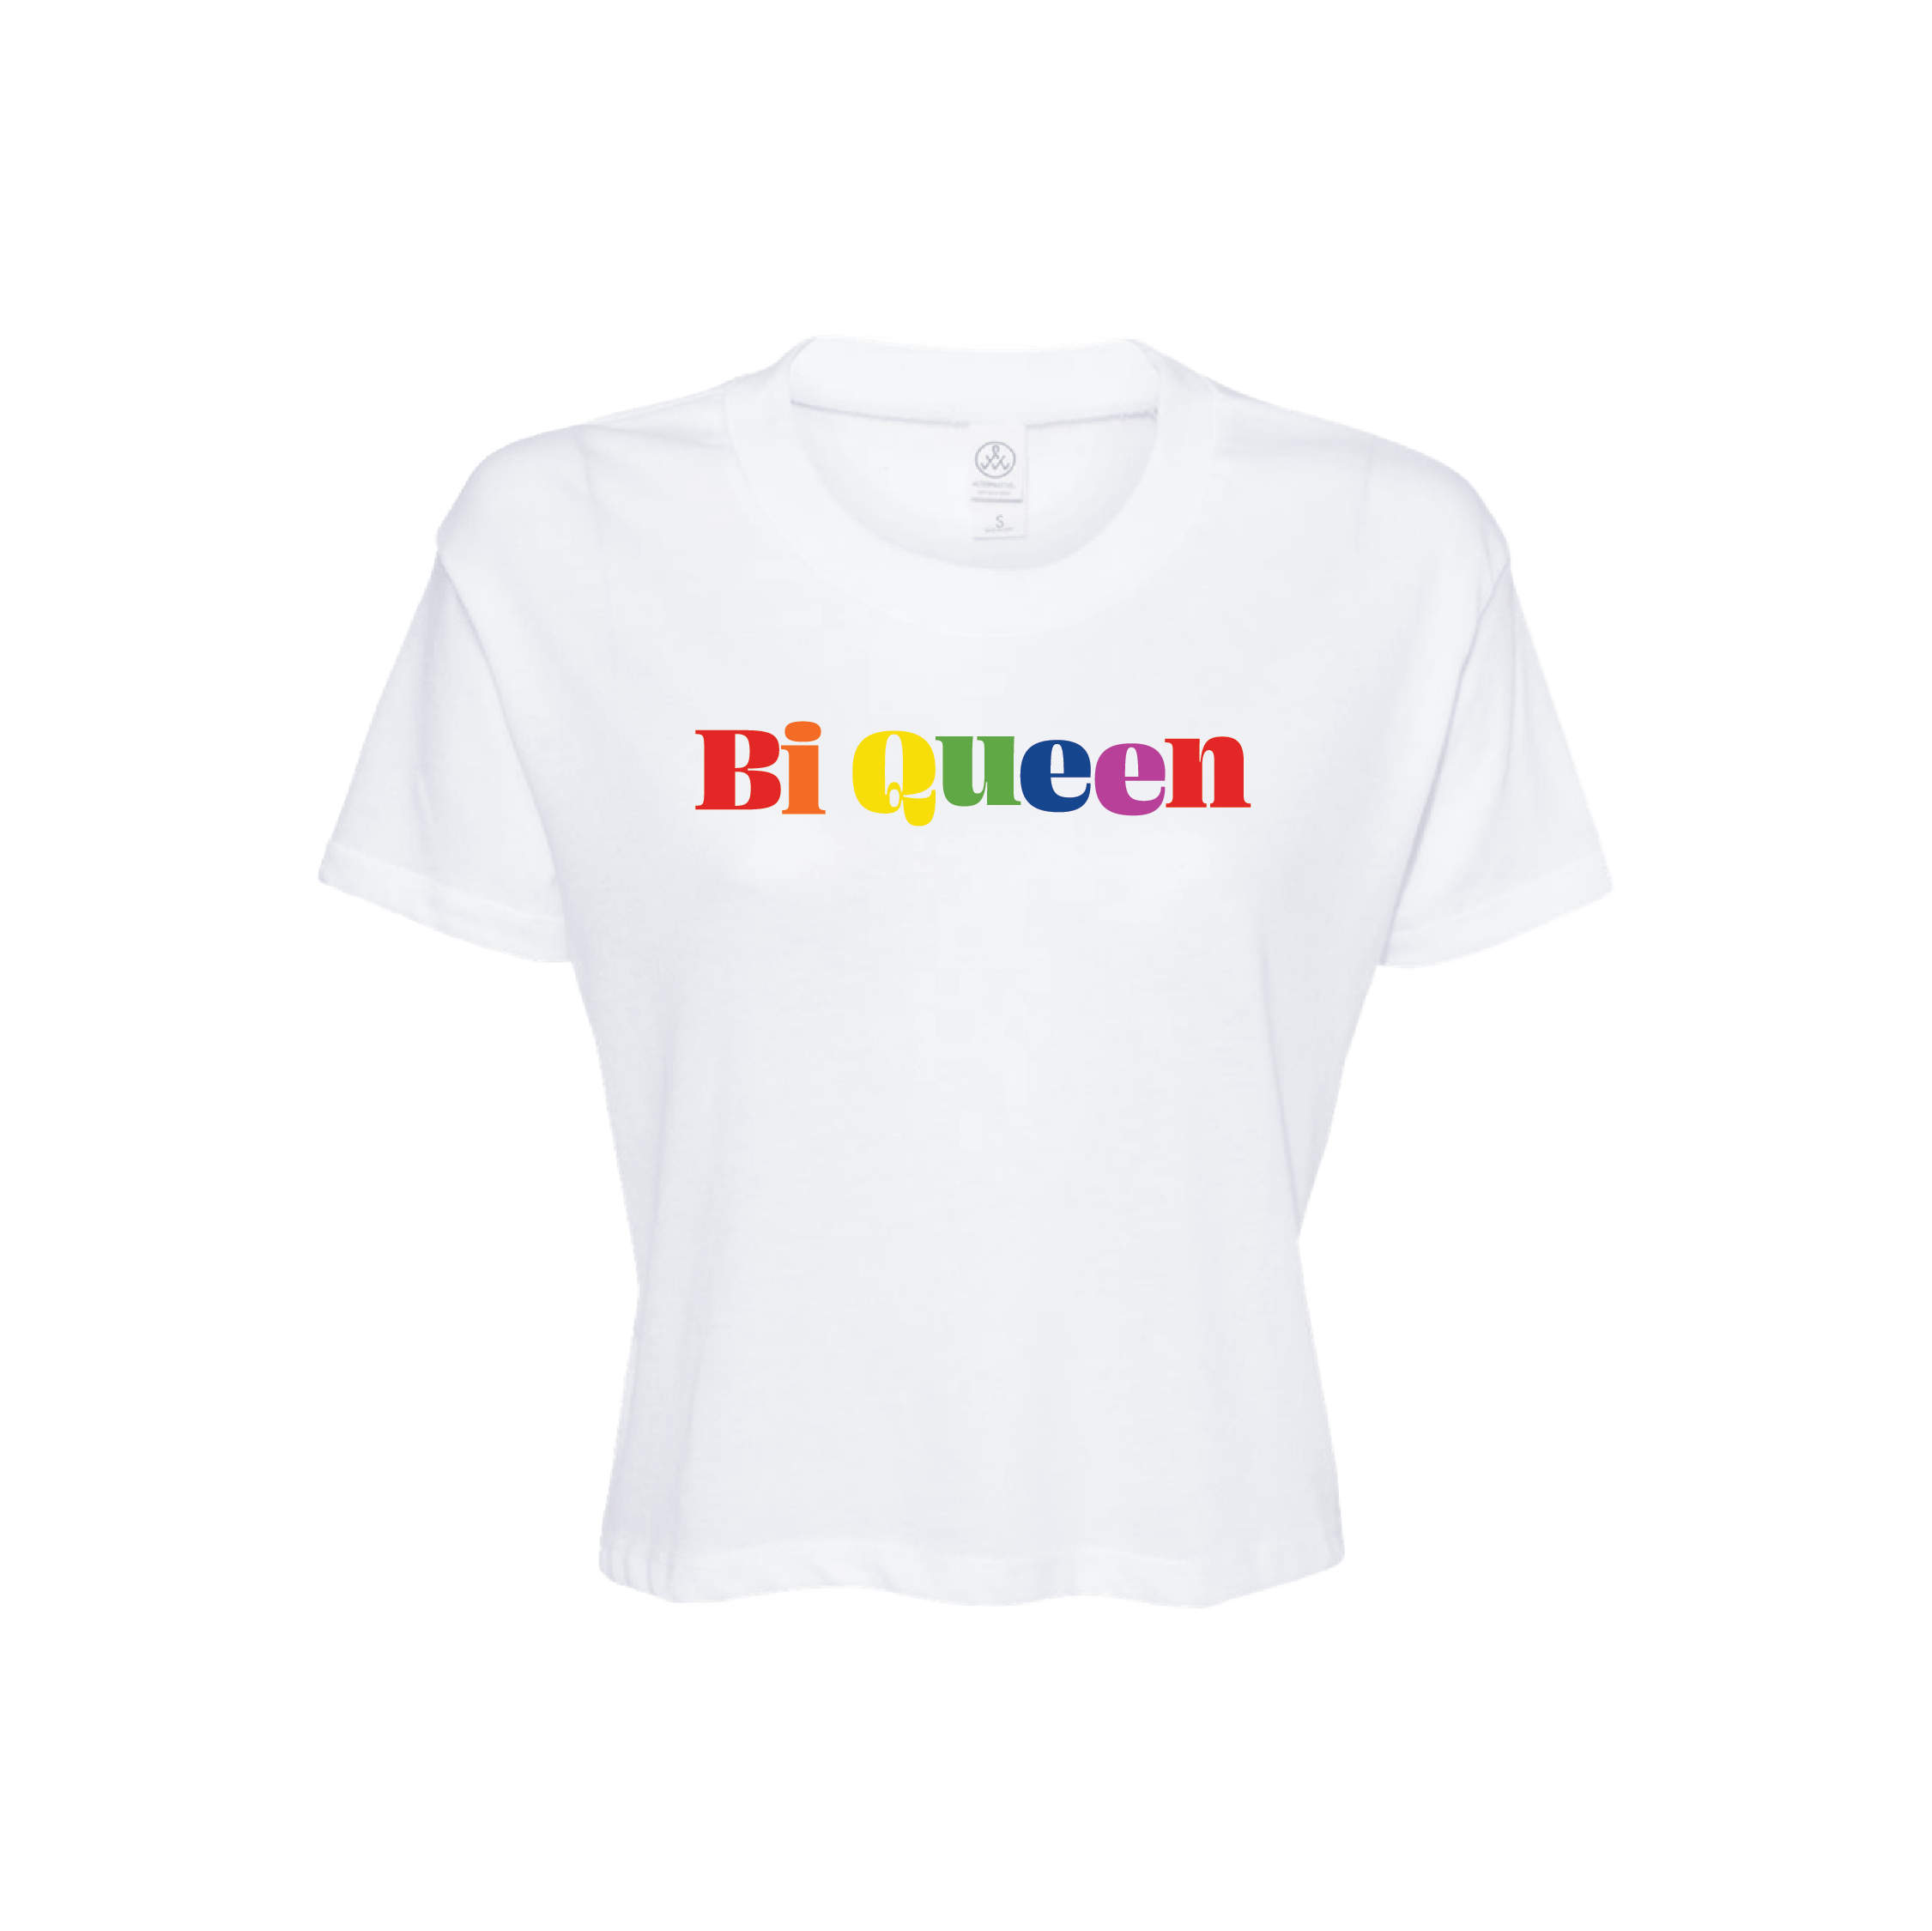 Domo Wilson - Bi Queen Crop Shirt